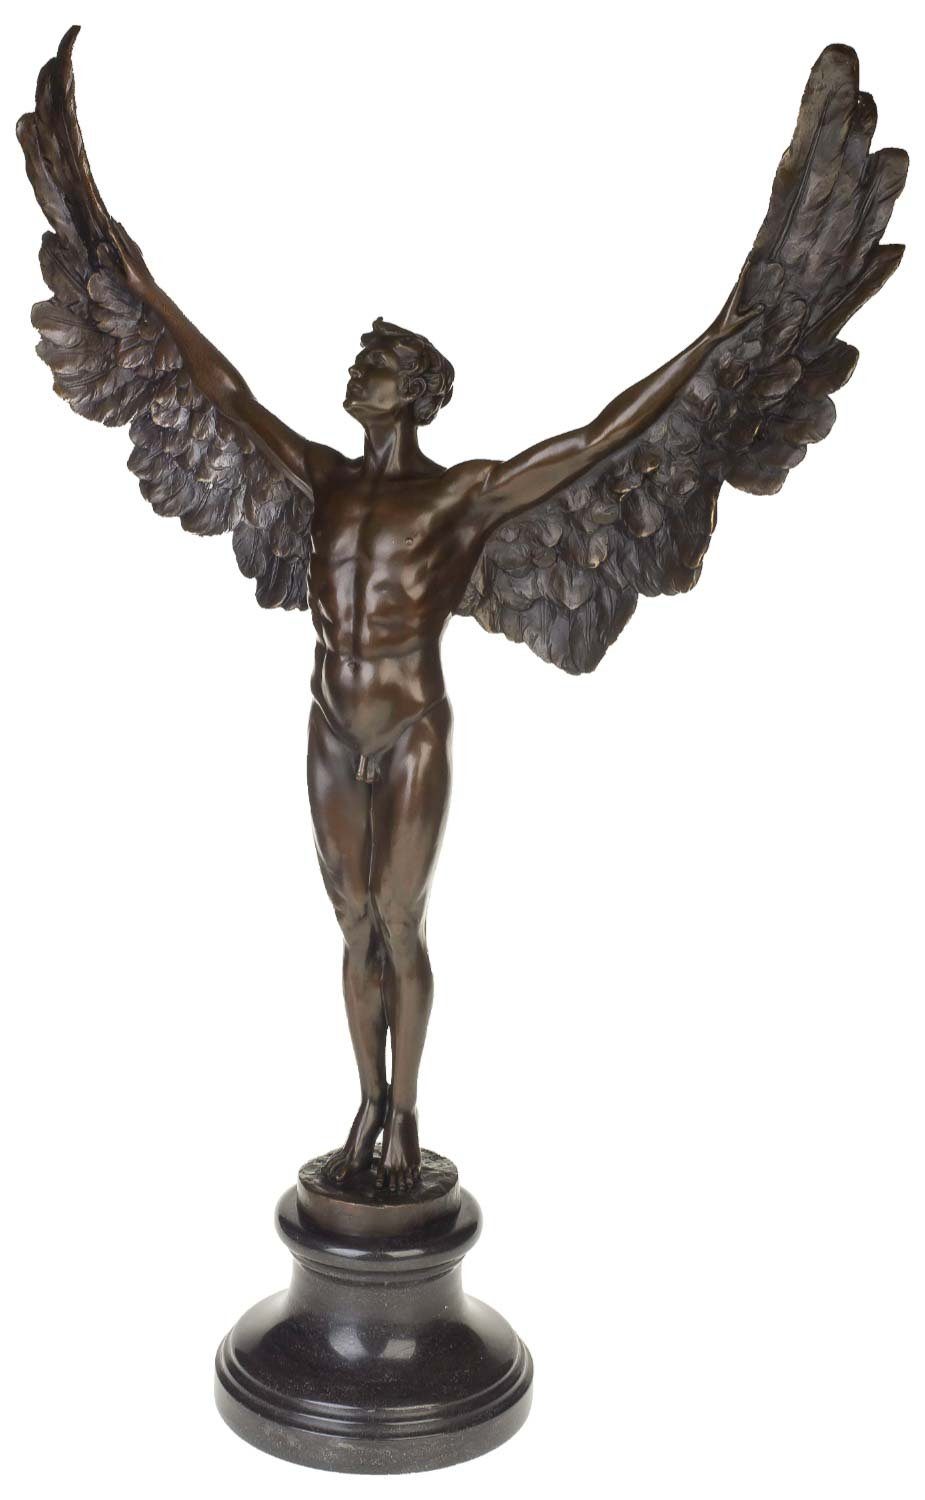 Aubaho Skulptur Bronzeskulptur Ikarus Mythologie Engel Flügel Bronze Figur Statue im A